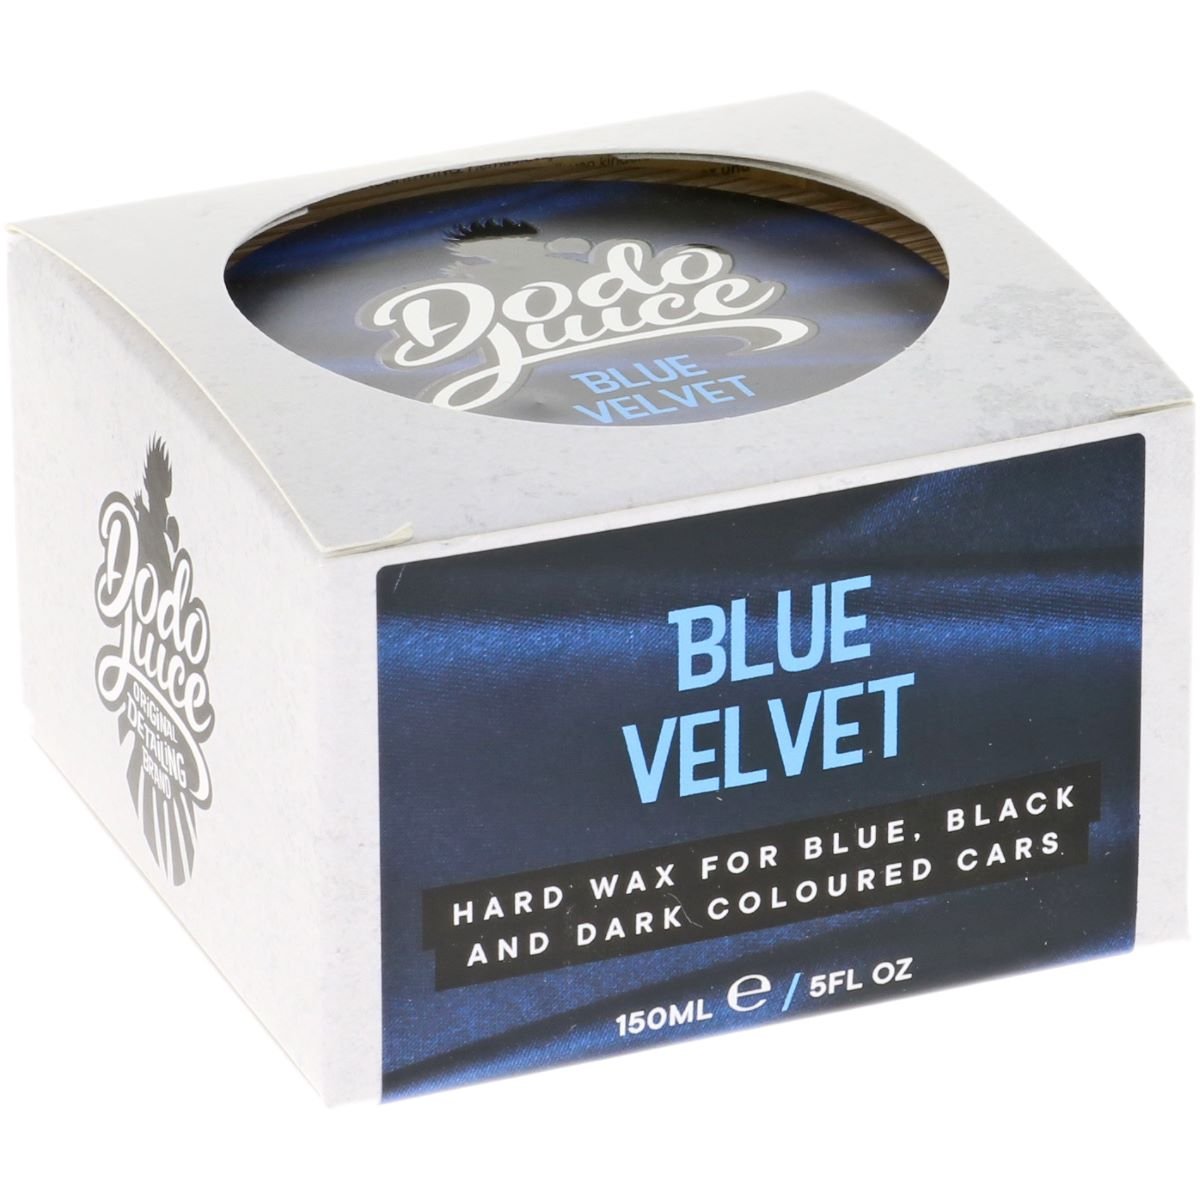 Blue Velvet hard wax for dark coloured cars  - 150ml